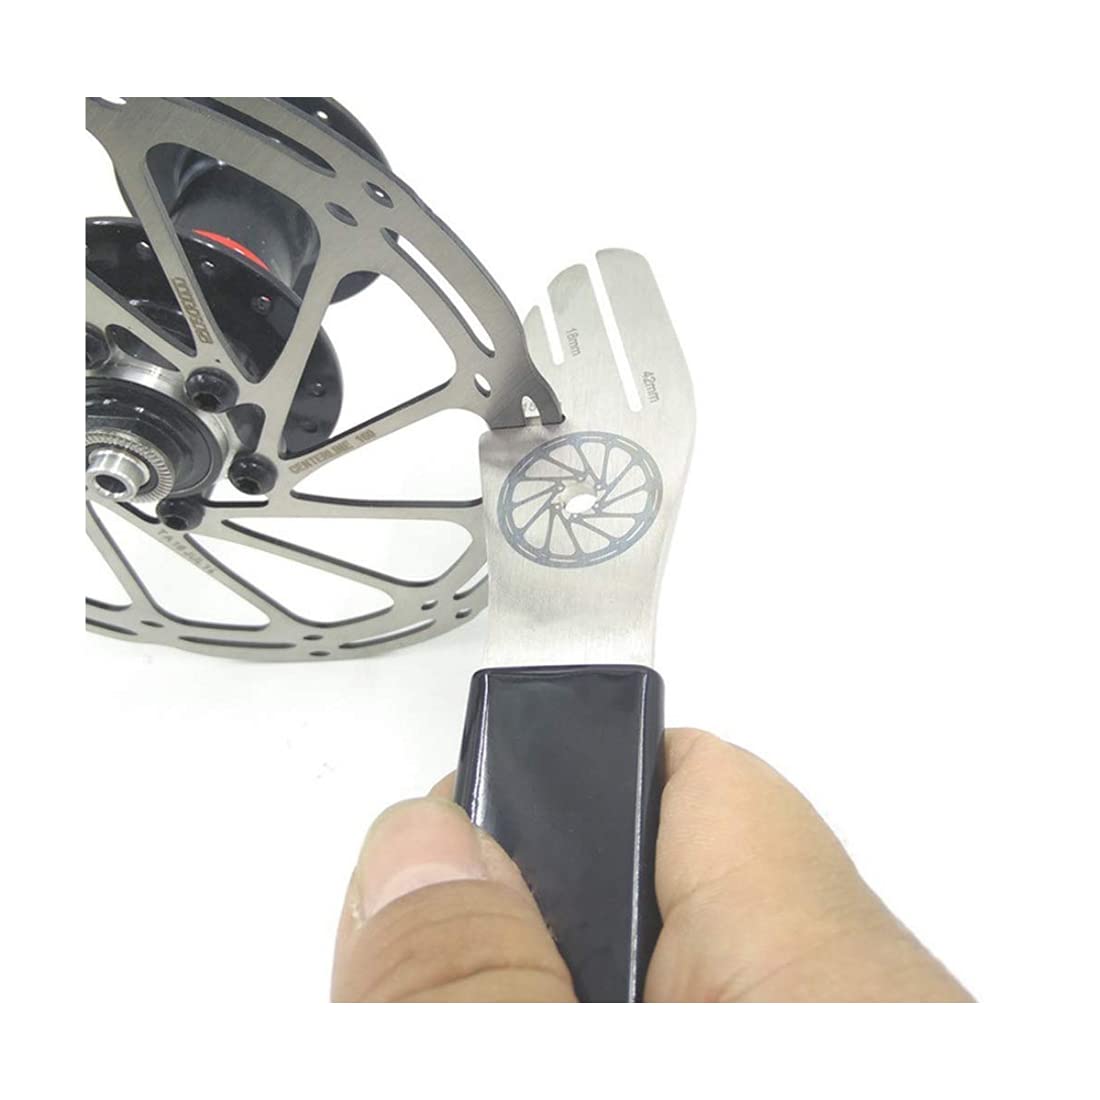 Bicycle Brake Repair Tool5